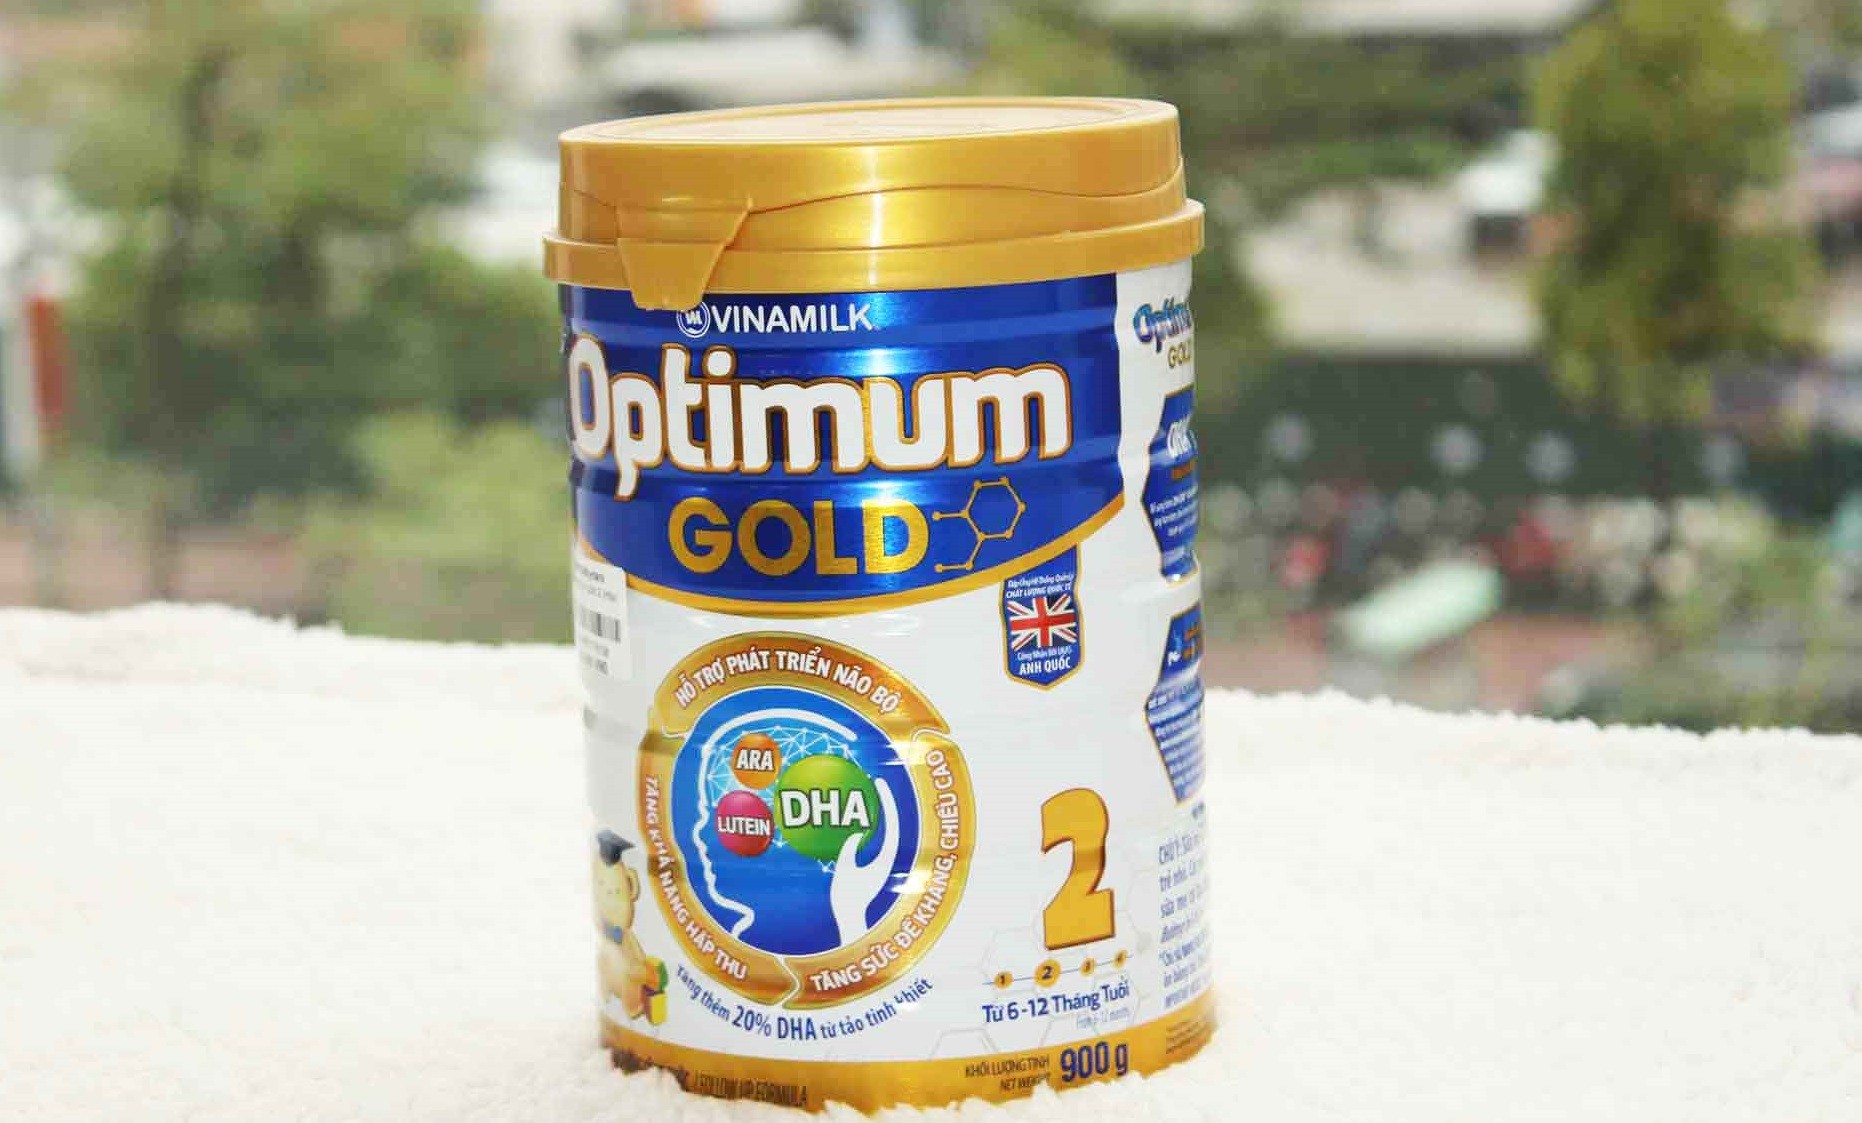 sữa Optimum Gold 1 có tăng cân không, sữa Optimum Gold 2 có tăng cân không, sữa Optimum cho trẻ sơ sinh có tốt không, sữa Optimum Gold 2 900g giá bảo nhiều, sữa Optimum Gold 2 900g giá bao nhiều, sữa Optimum Gold 4 có tốt không, sữa Optimum Gold 3 có tăng cân không